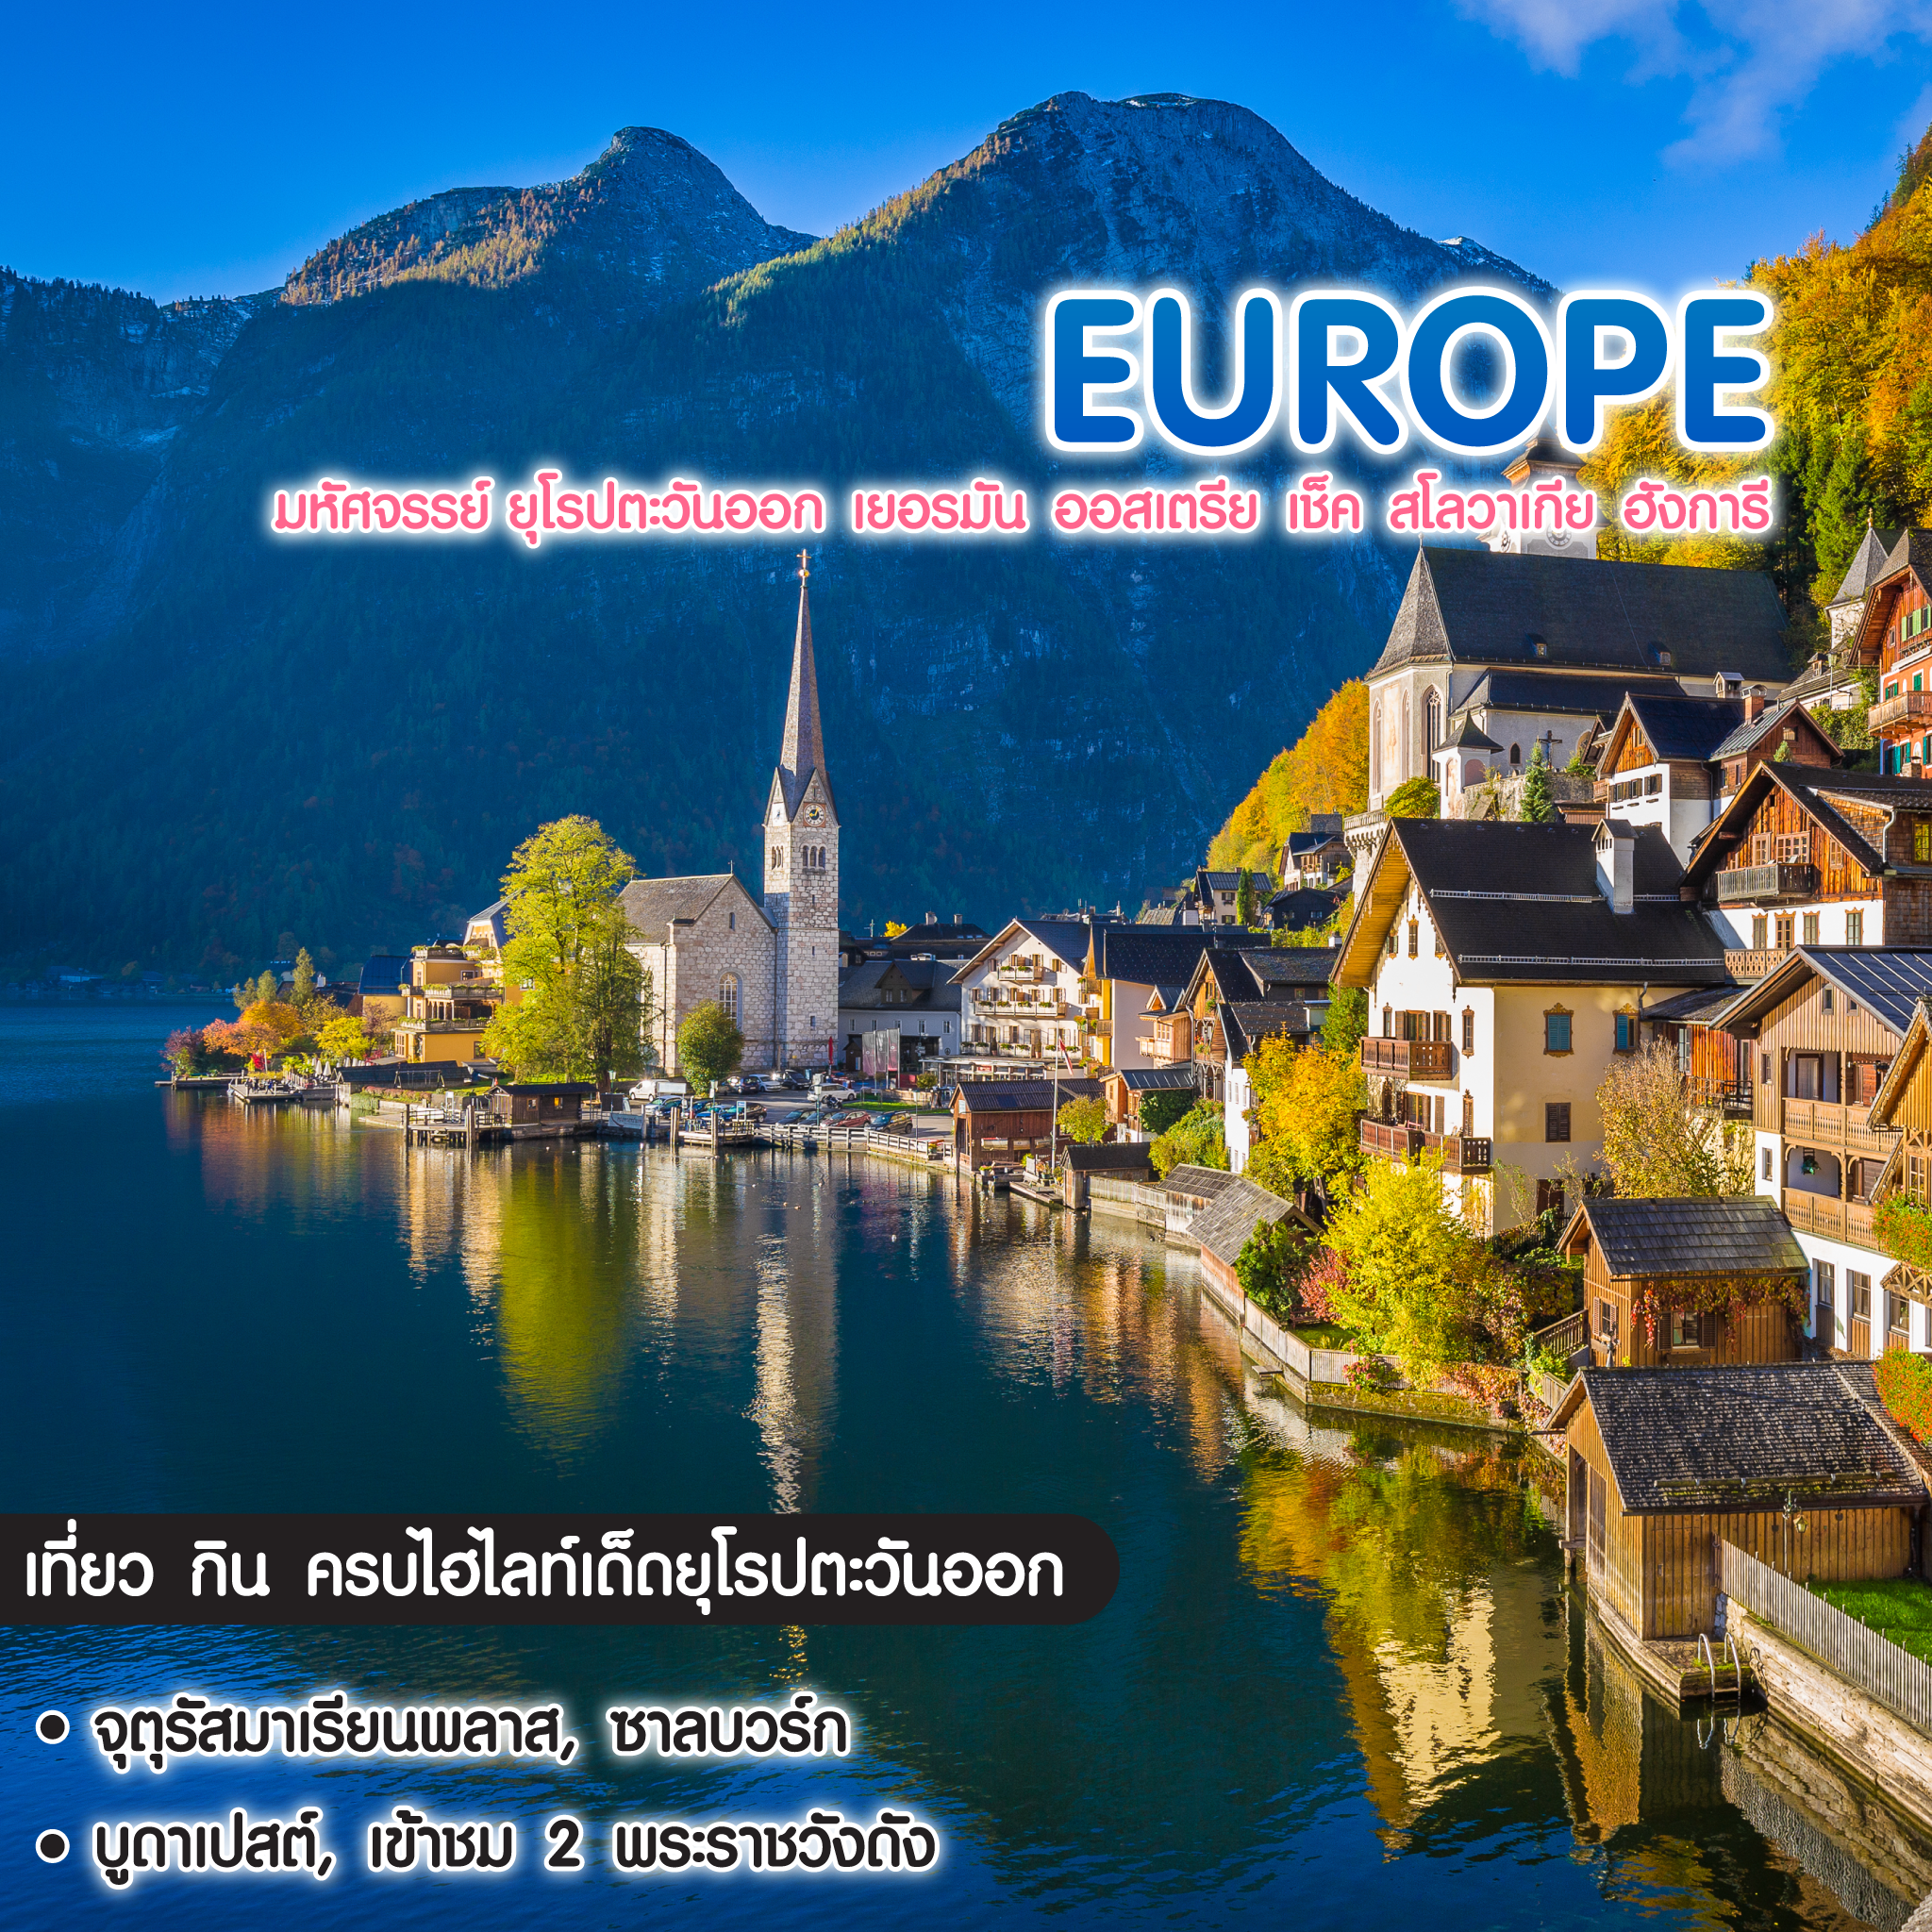 ทัวร์ยุโรป มหัศจรรย์ Europe เยอรมัน ออสเตรีย เช็ค สโลวาเกีย ฮังการี